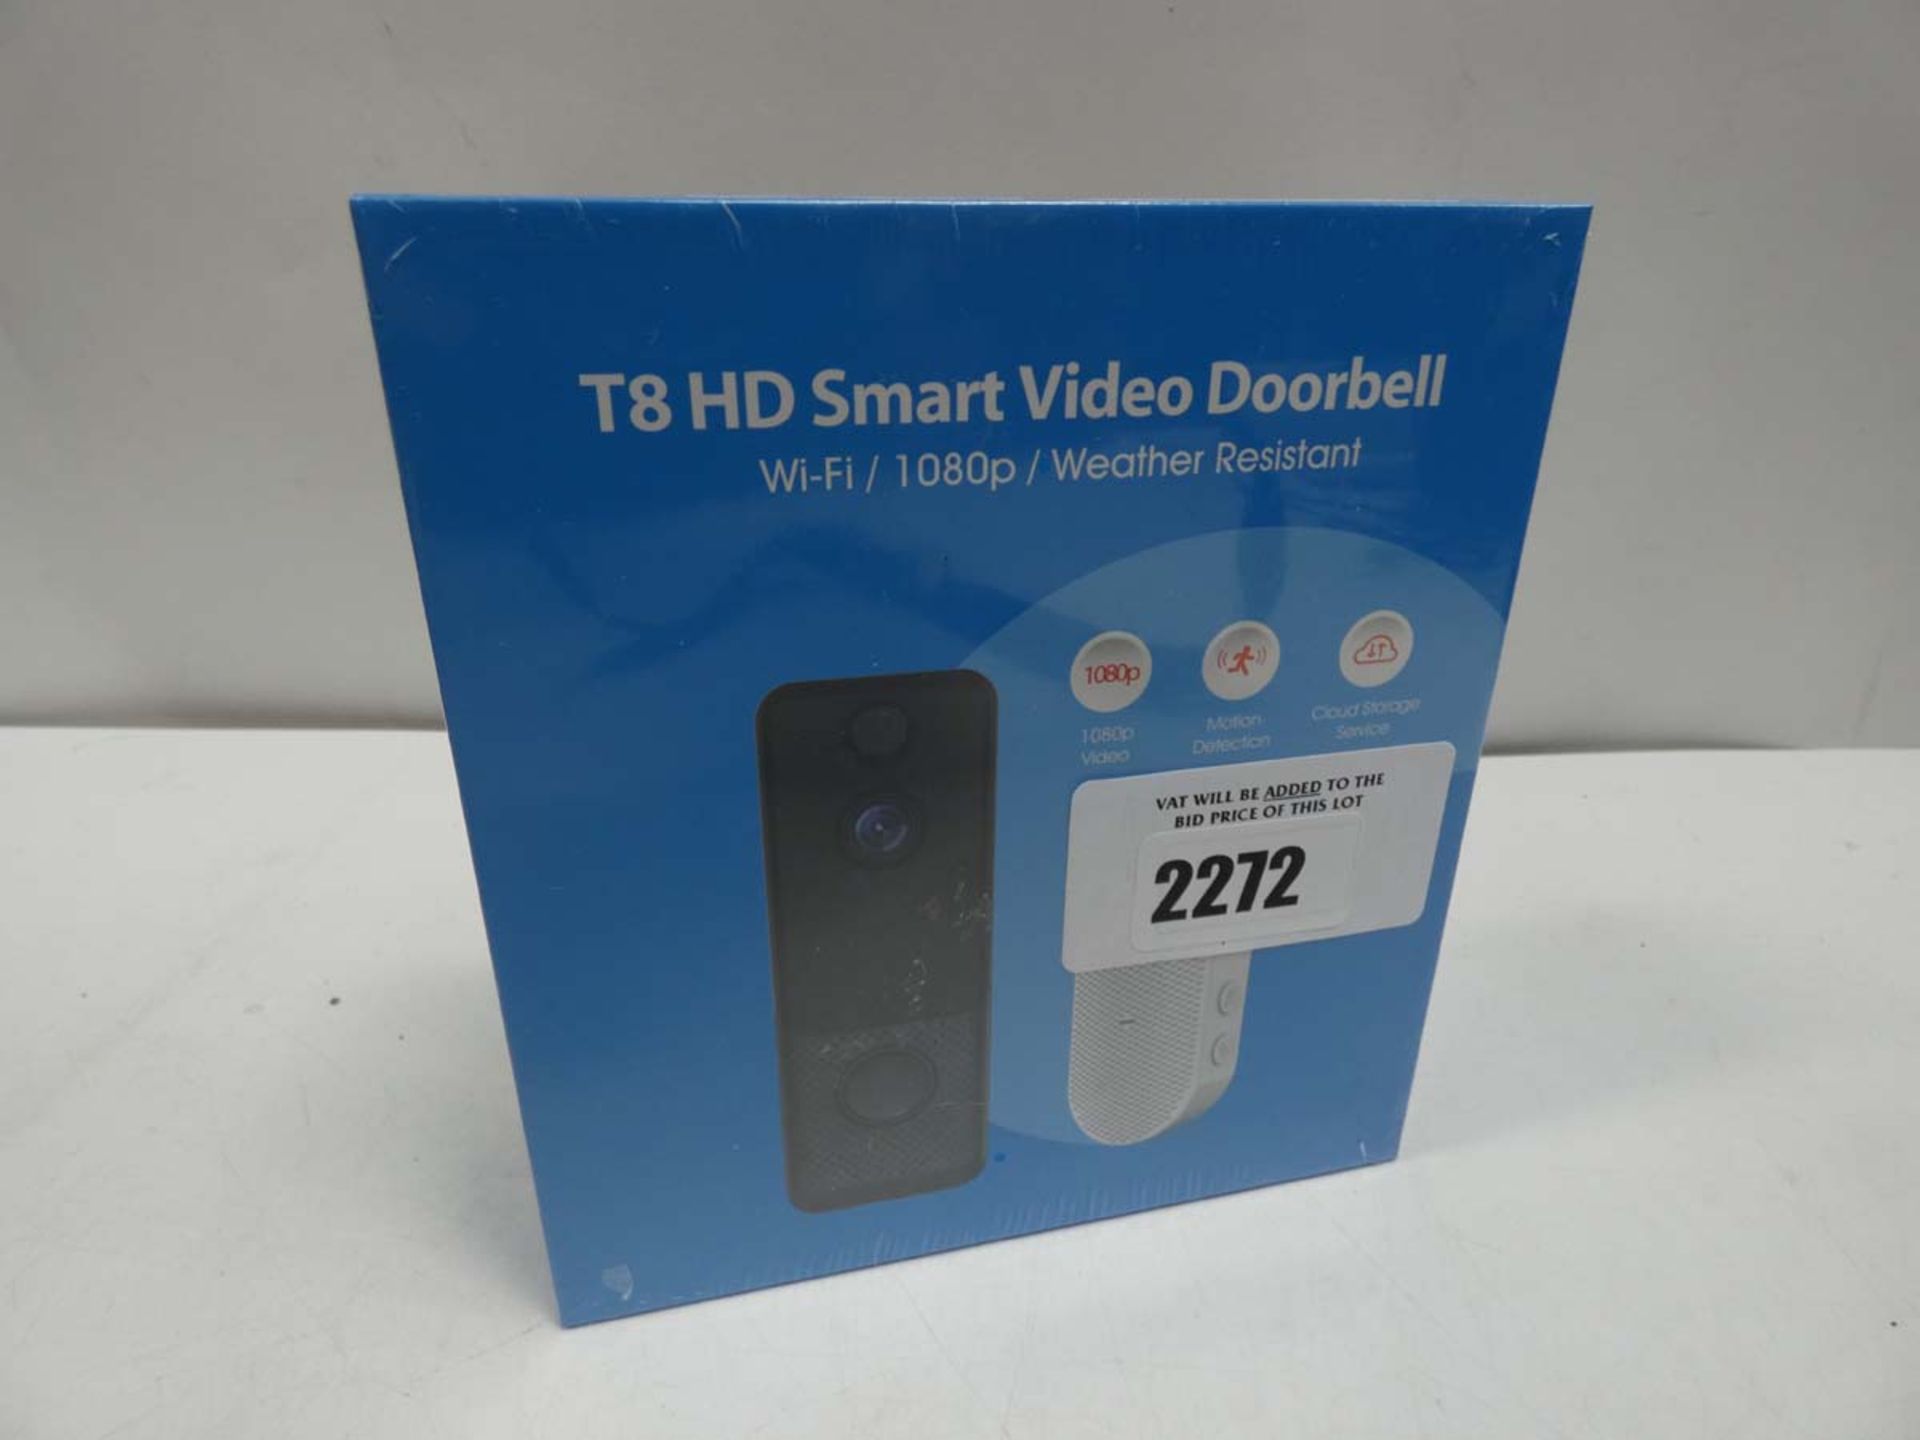 T8 HD Smart Video Doorbell